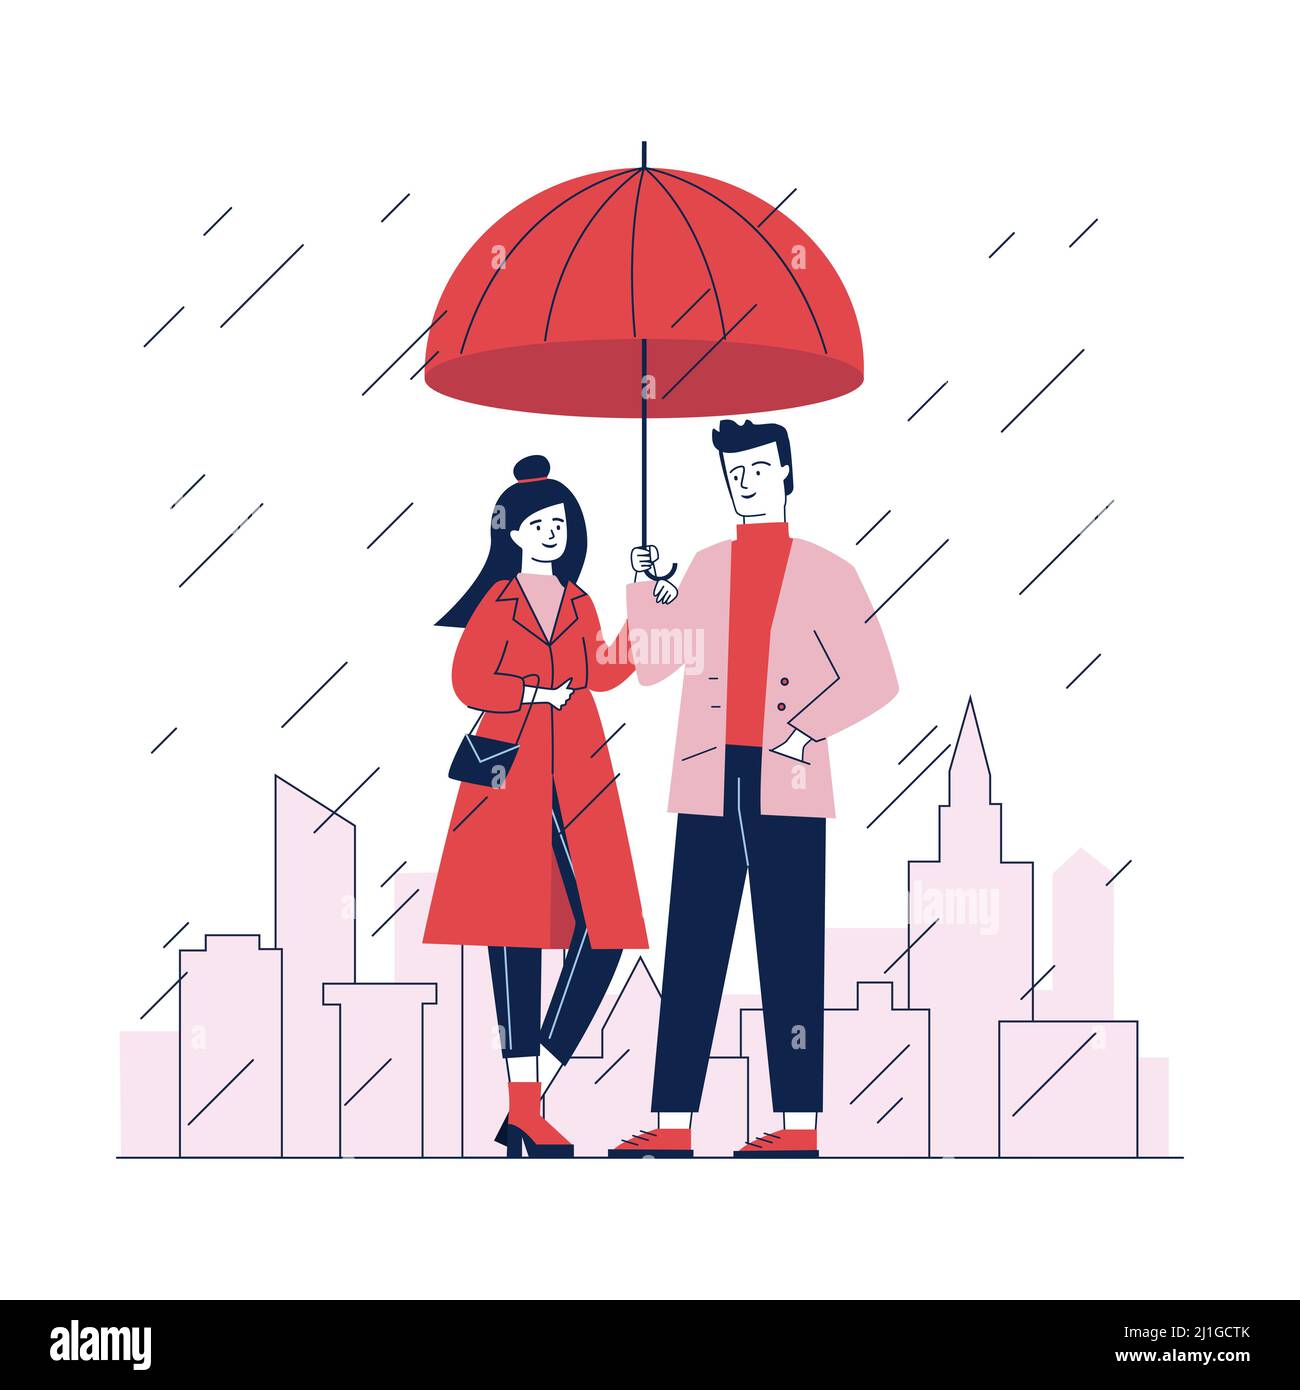 Pärchen, die an regnerischen Tagen auf der Straße unter einem Sonnenschirm stehen. Mann und Frau im stilvollen roten Mantel flache Vektor-Illustration. Menschen vor dem Stadtbild mit s Stock Vektor